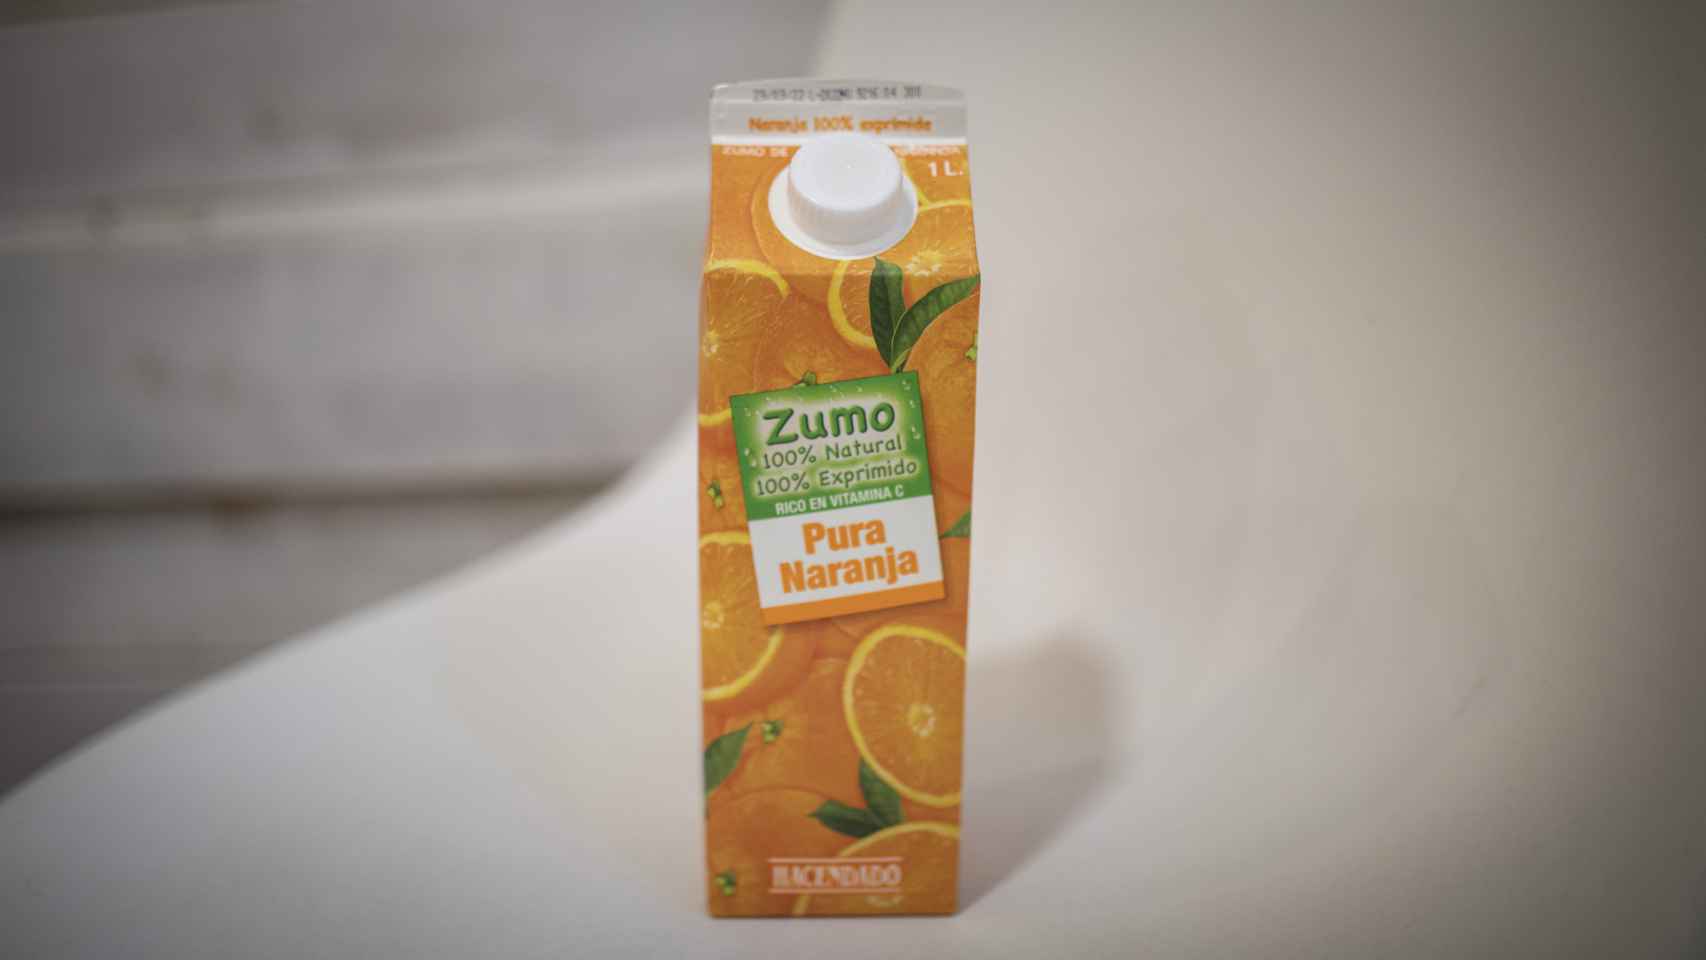 El 'brick' de zumo de naranja 100% exprimido y sin pulpa de Hacendado, la marca blanca de Mercadona.